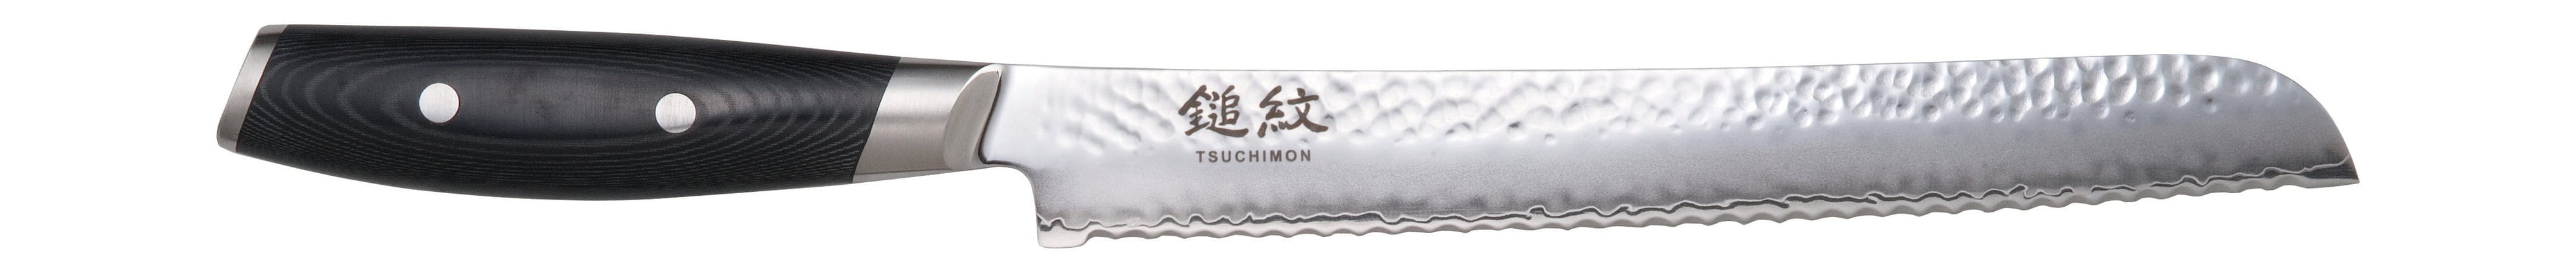 Yaxell Tsuchimon brödkniv, 23 cm